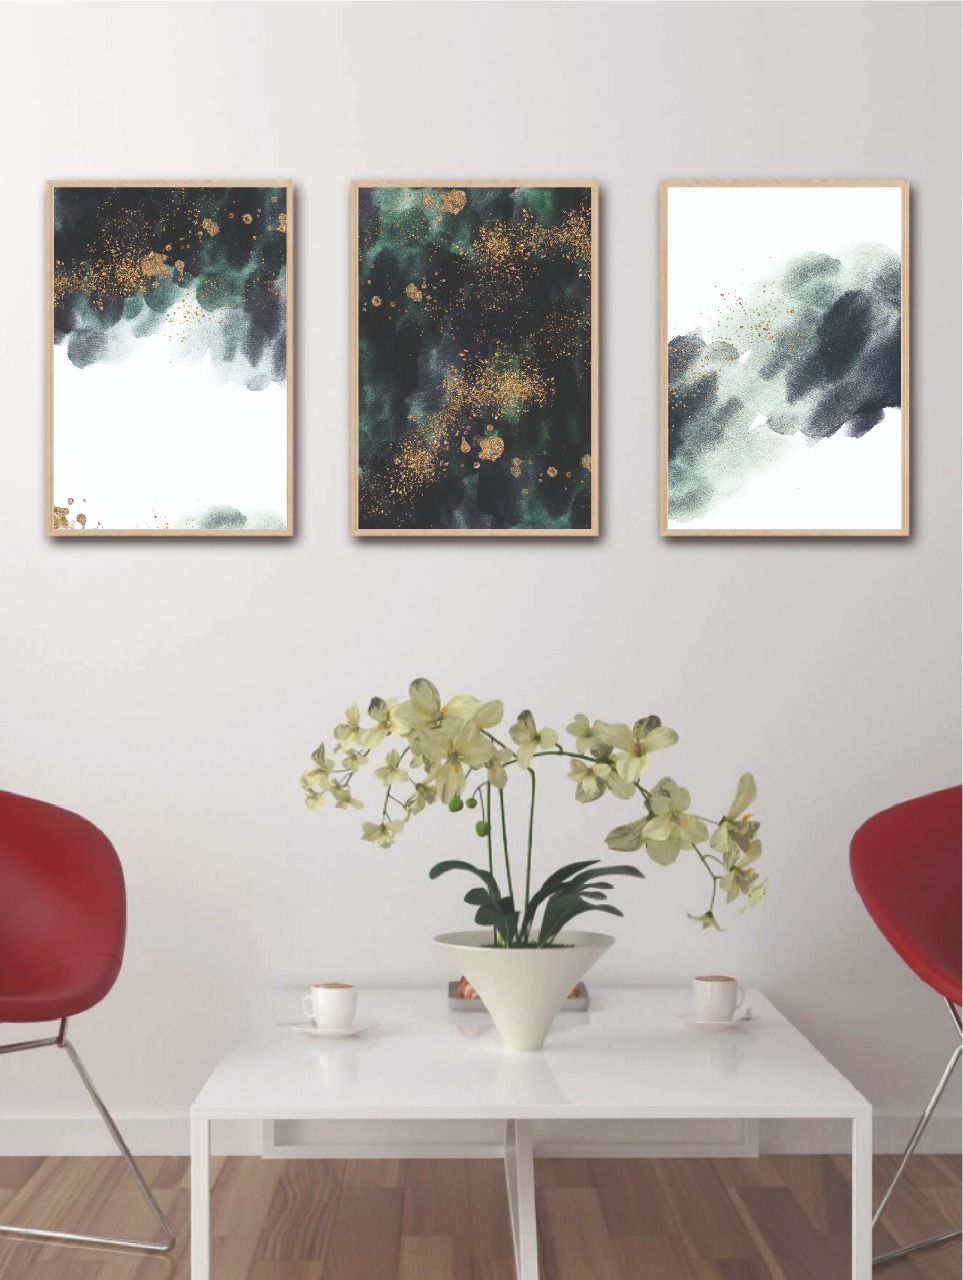 cuadros decorativos, set de 3, 50x70 cm verdes, negros y dorados 6.